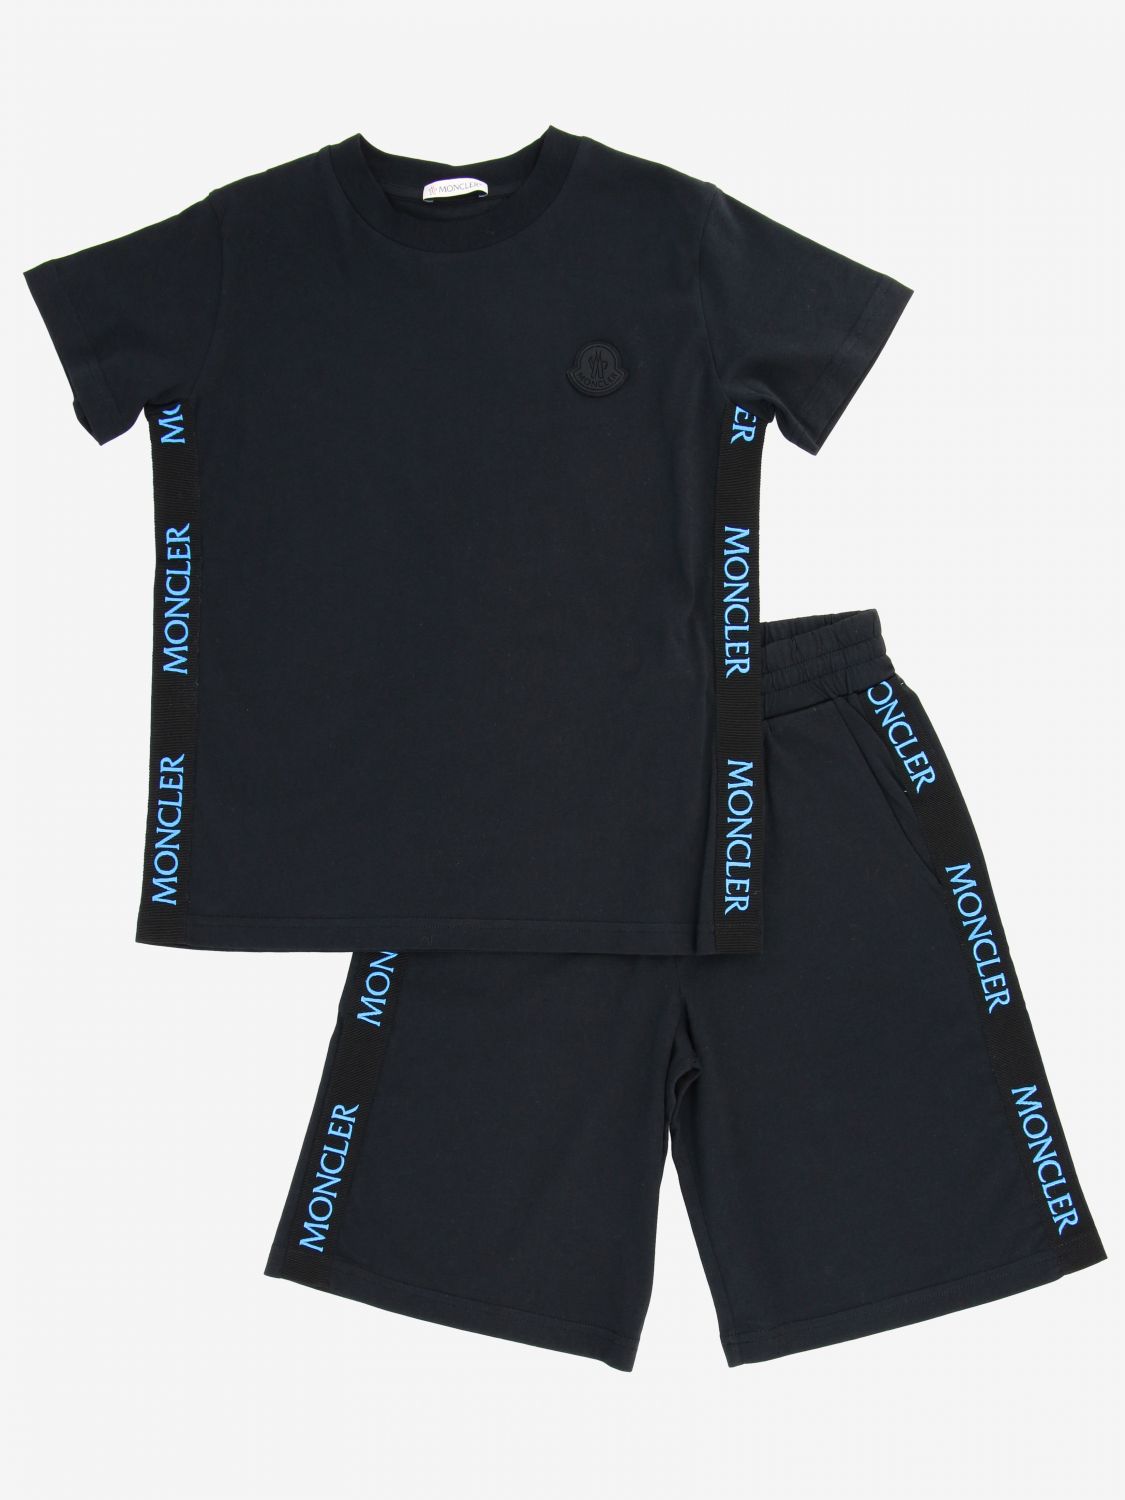 moncler shorts and shirt set